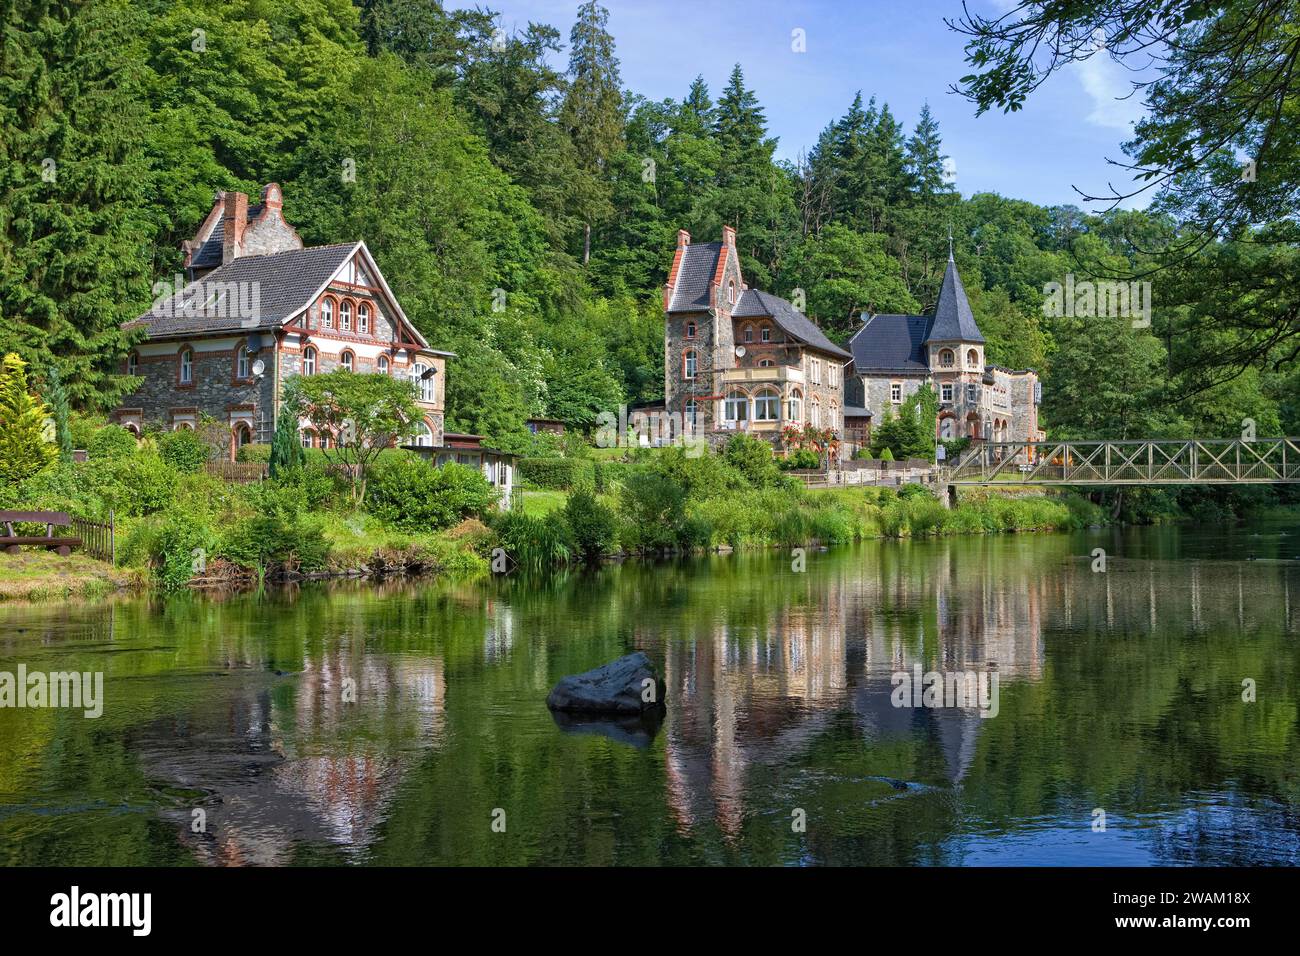 Maisons sur la rivière Bode, village de Treseburg, vallée Bodetal, Harz district, Saxe-Anhalt, Allemagne, Europe Banque D'Images